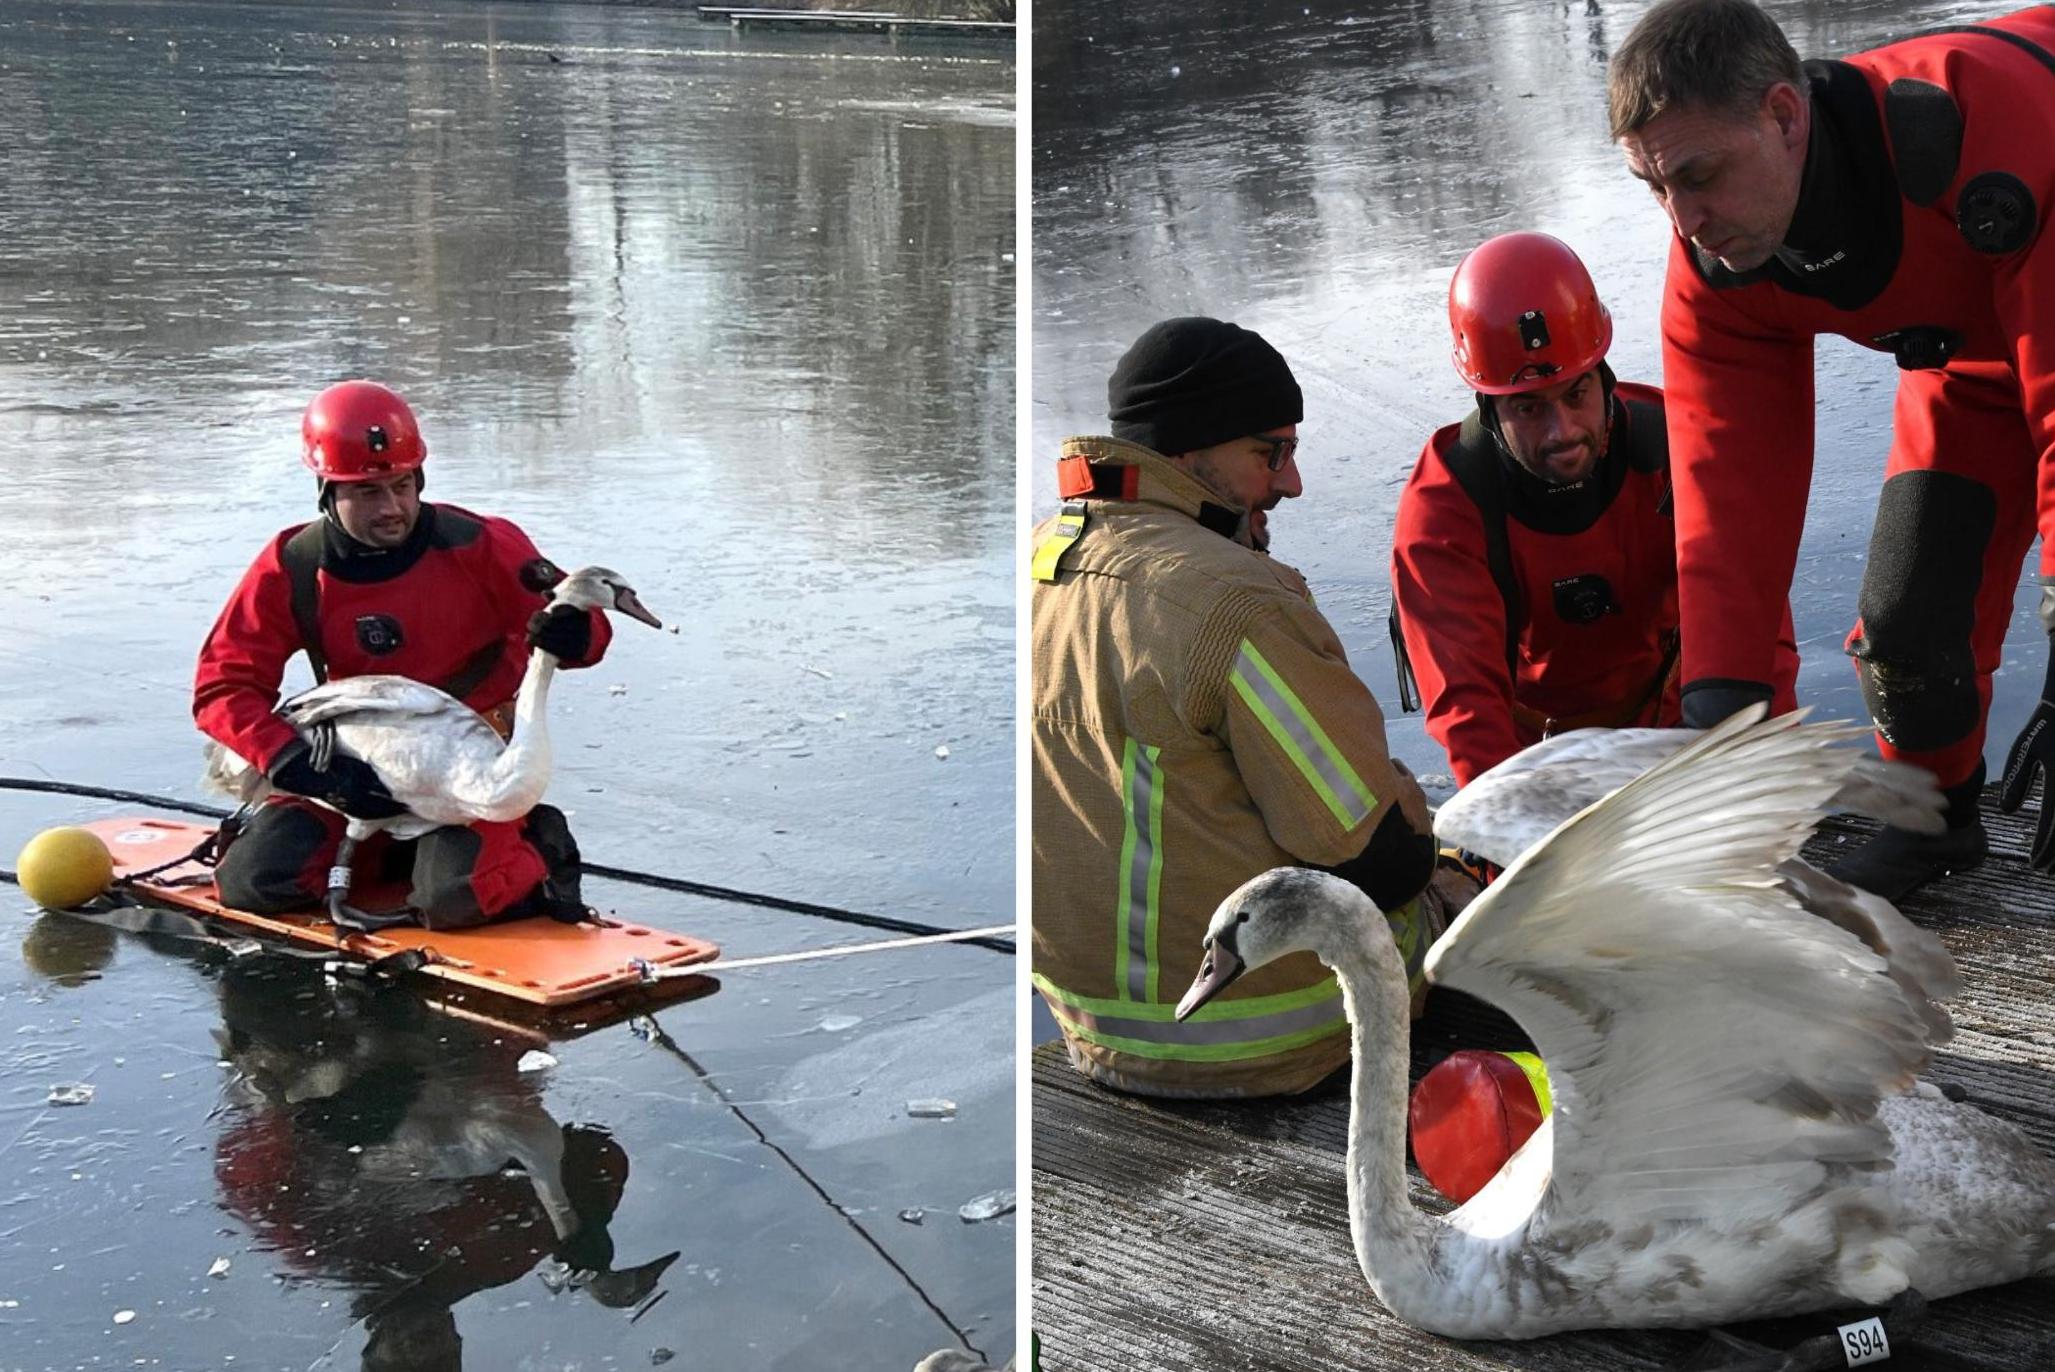 Brandweer redt zwaan uit bevroren vijver